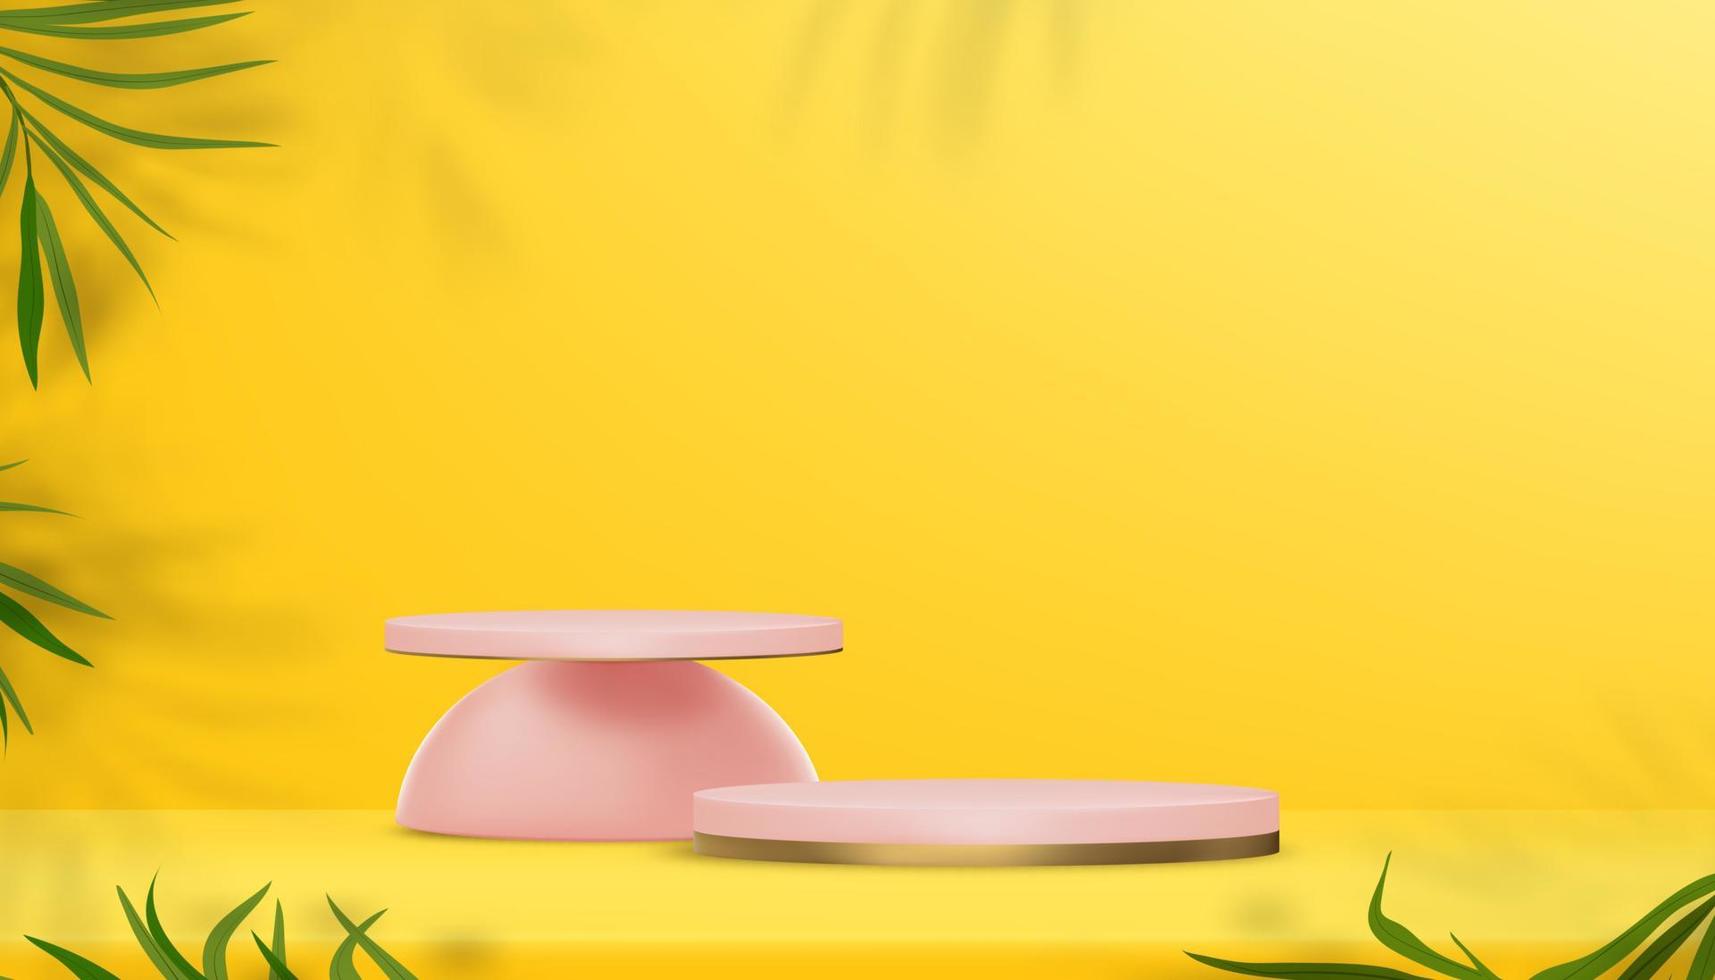 sala de estudio con podio rosa con sombra de hoja de palma en el fondo de la pared amarilla, diseño de fondo vectorial 3d con marco de hojas de coco, escaparate de ilustraciones para la primavera, pancarta de verano vector